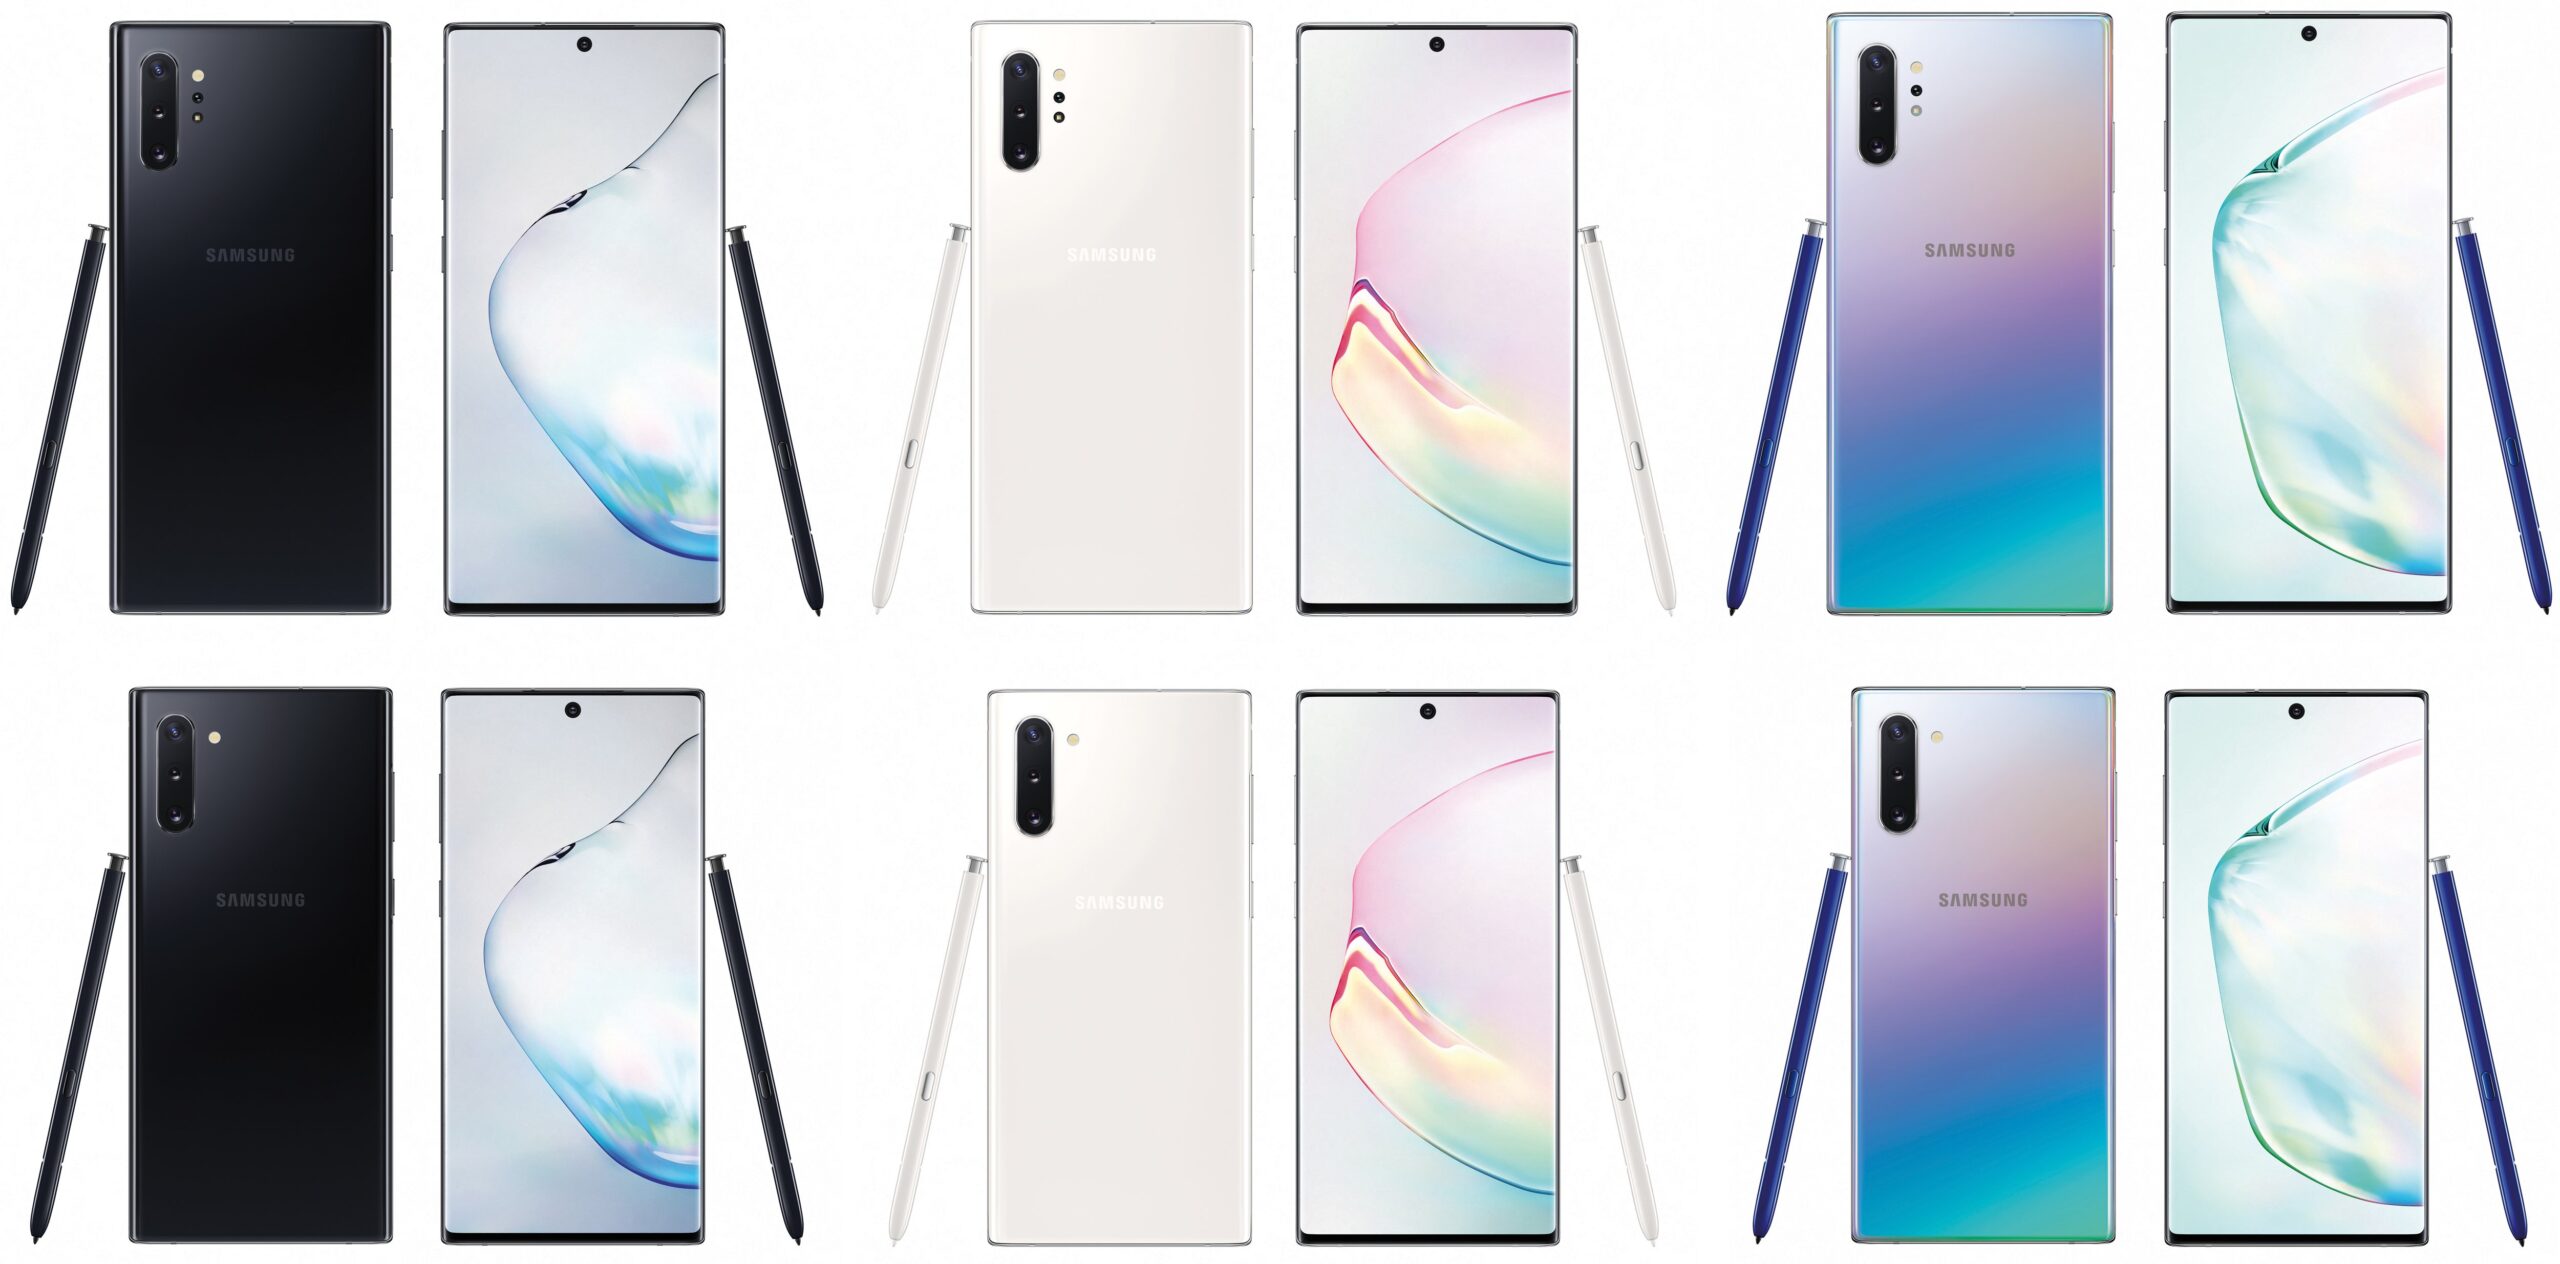 Samsug Galaxy Note10 / Note10 +: Отфильтрованные изображения высокого качества во всех трех цветах